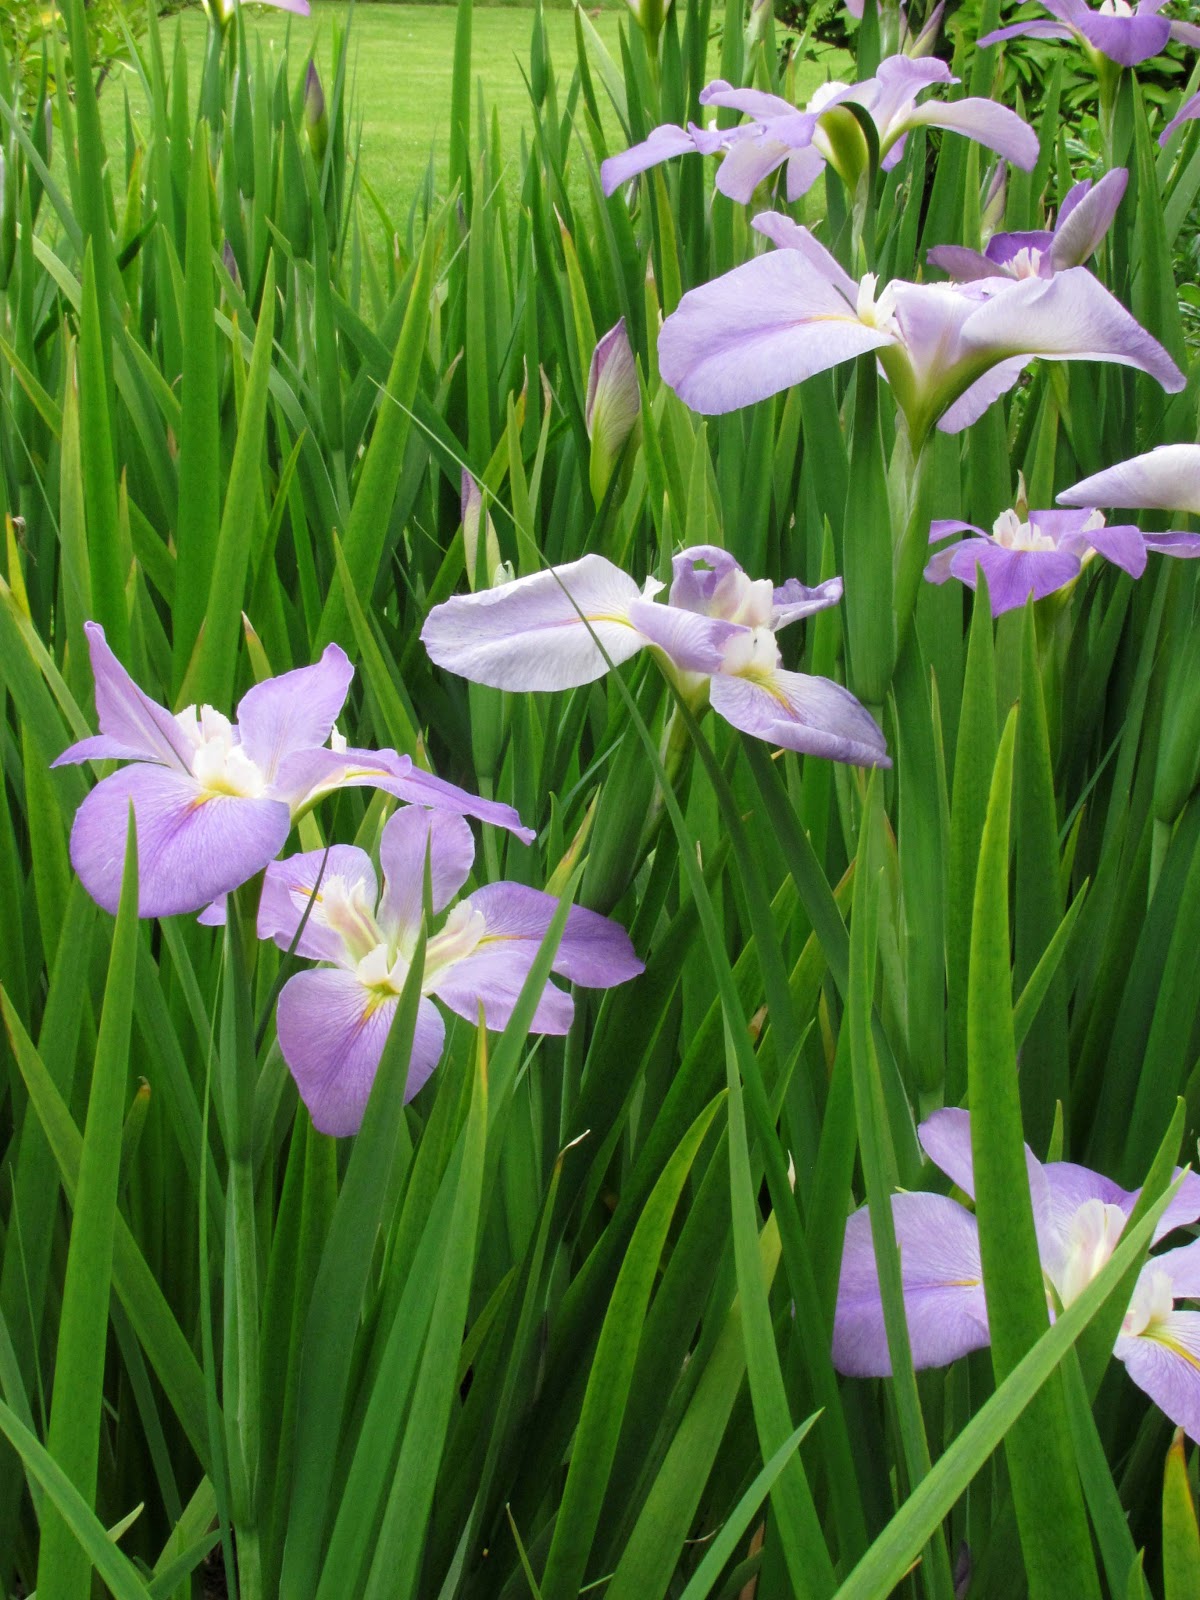 En el jardin: Iris o lirios, todos espectaculares.